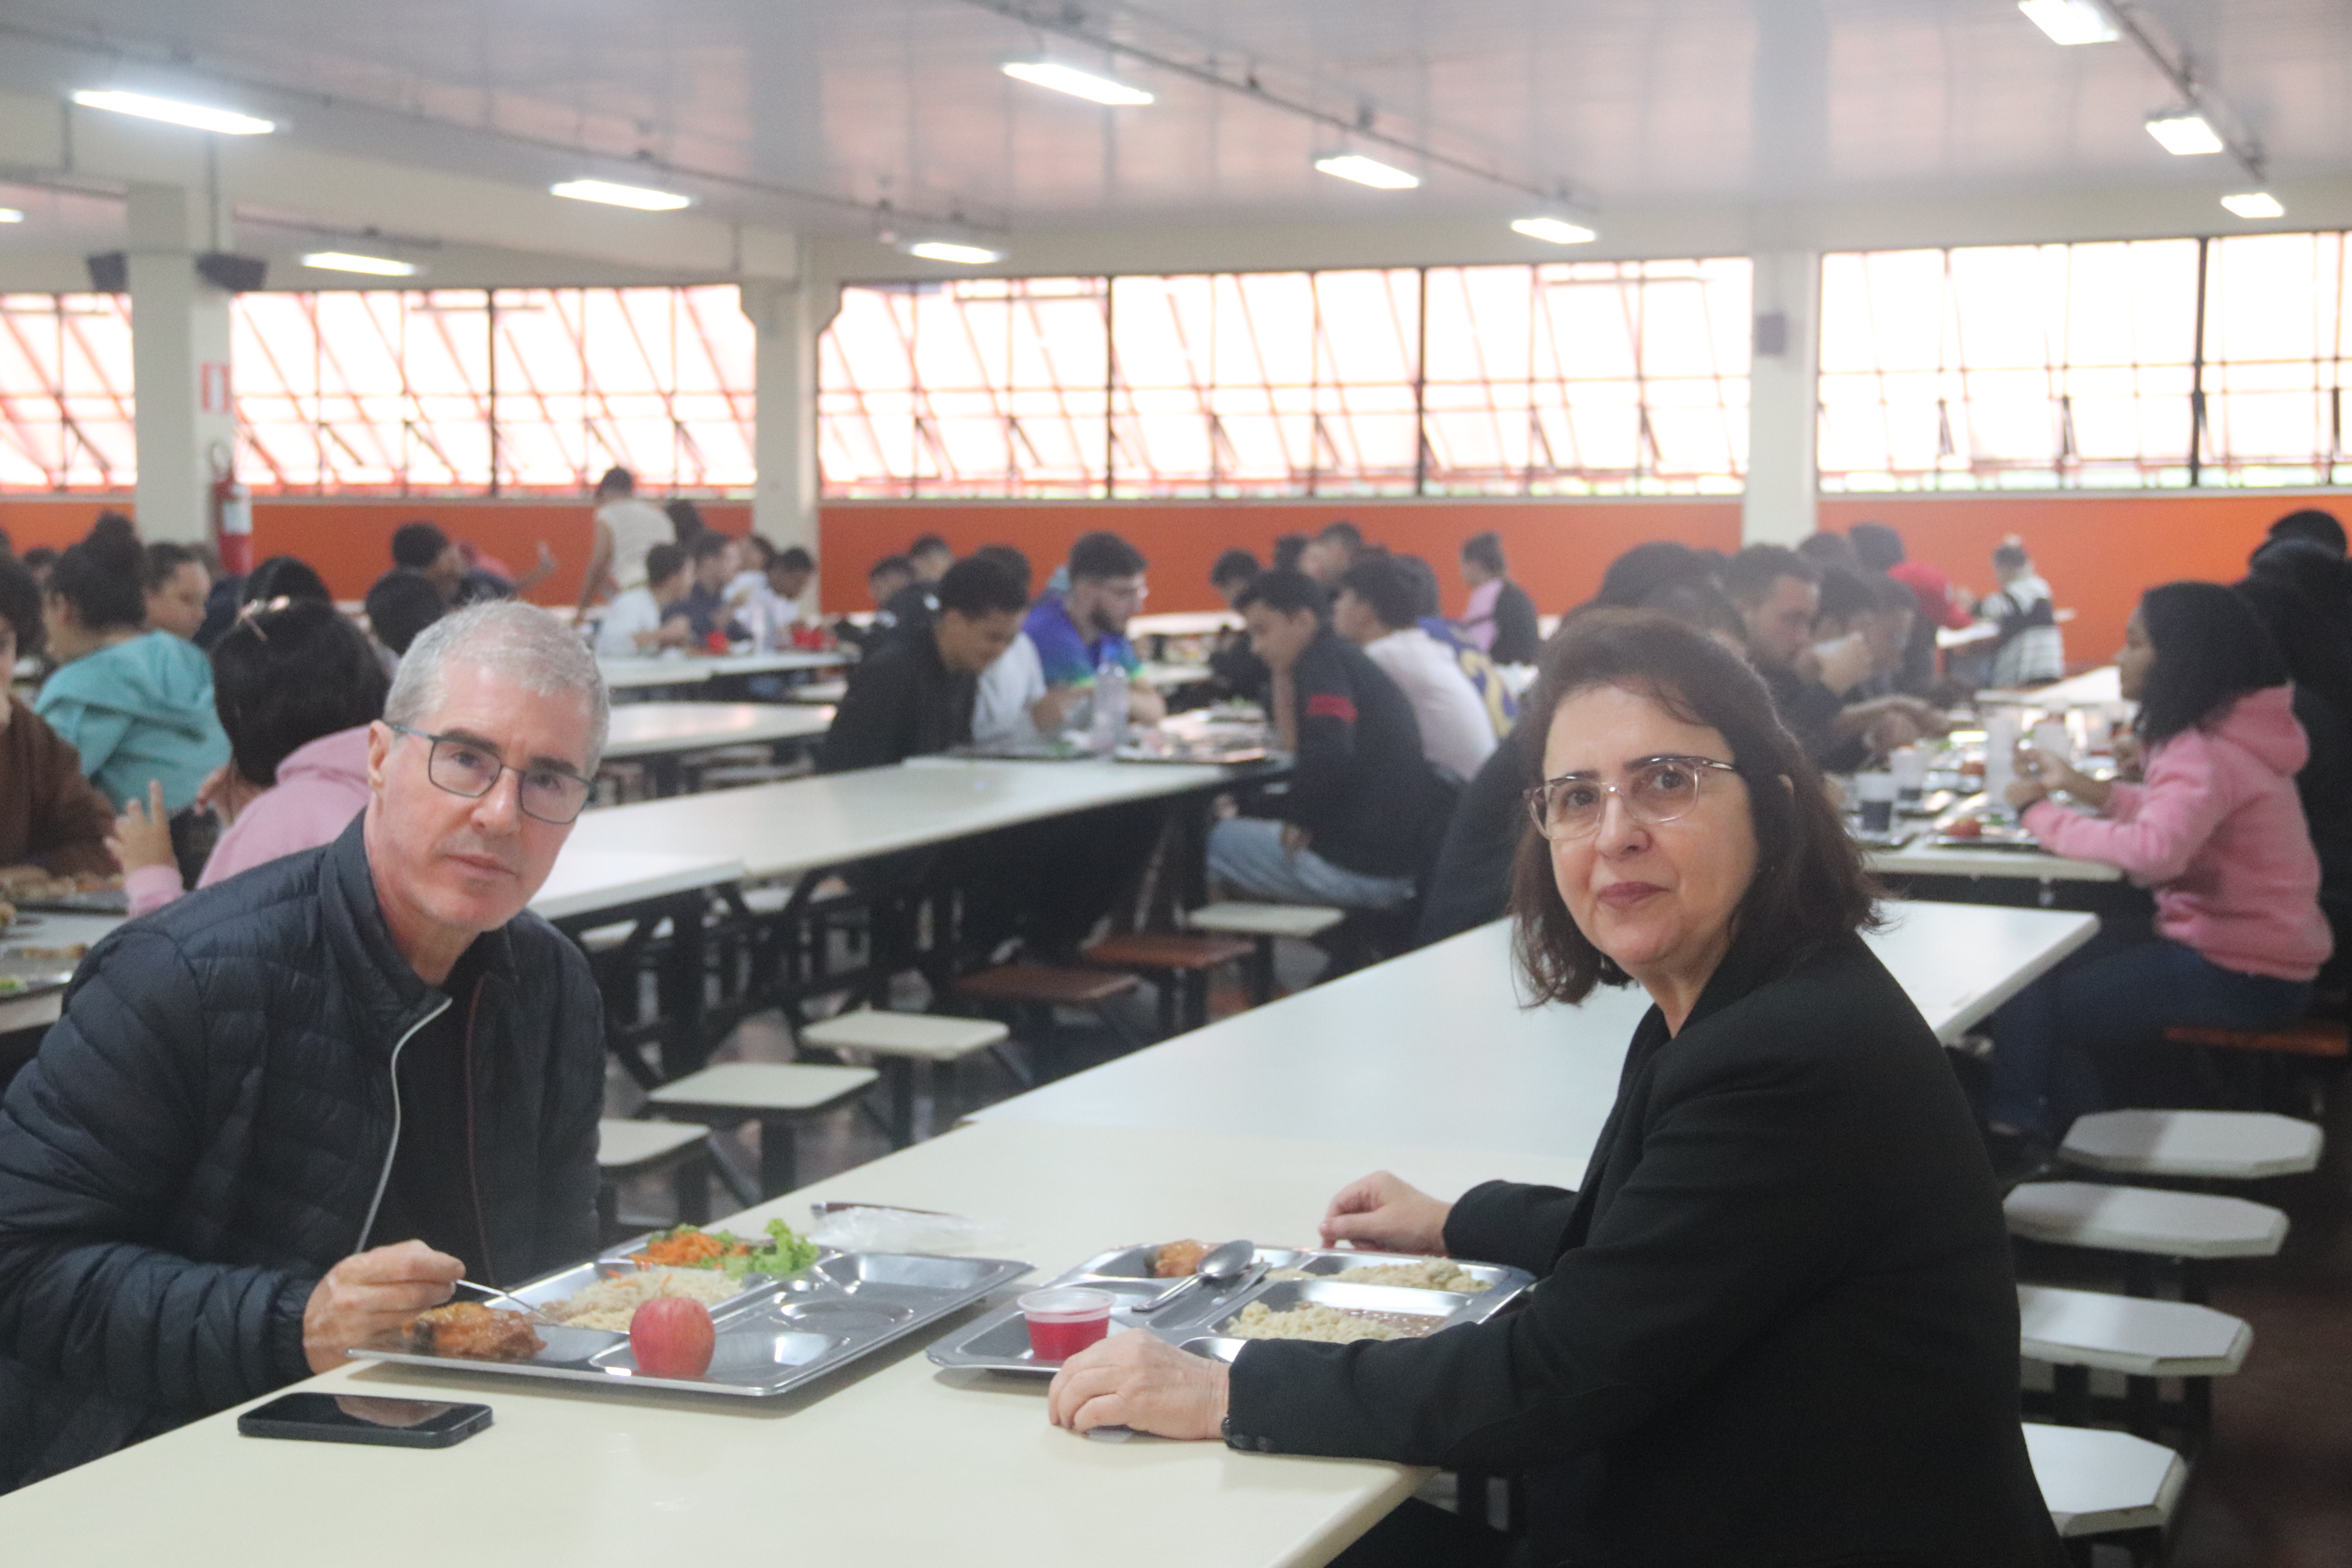 Reitora Claudia Marliére com o professor Hernani Mota de Lima, durante o almoço "Alimentando a Consciência"